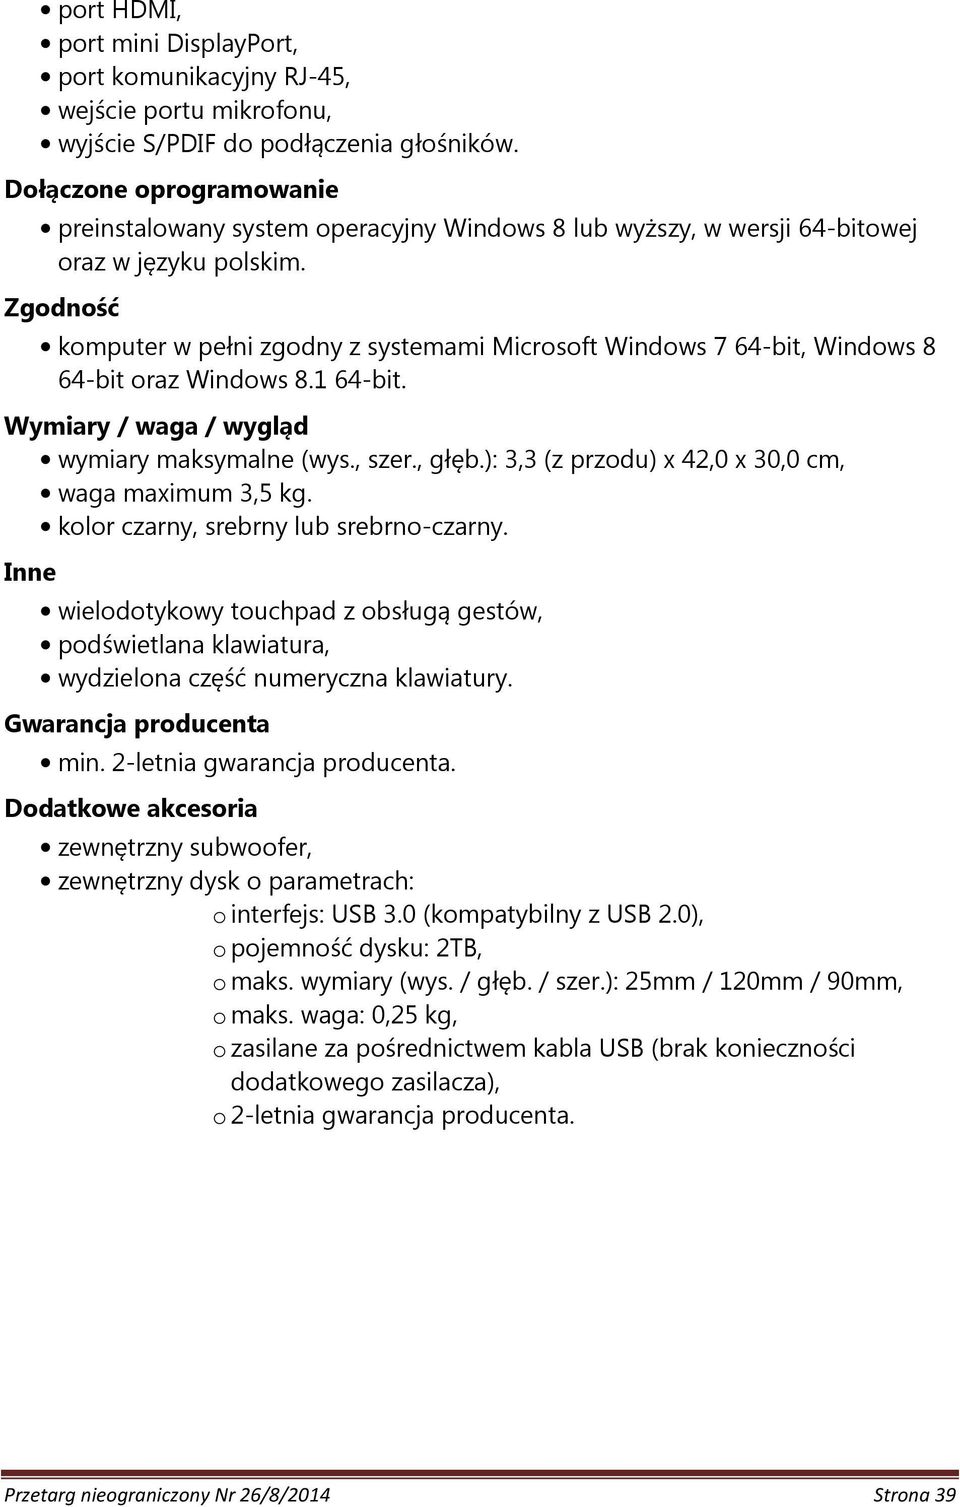 Zgodność komputer w pełni zgodny z systemami Microsoft Windows 7 64-bit, Windows 8 64-bit oraz Windows 8.1 64-bit. Wymiary / waga / wygląd wymiary maksymalne (wys., szer., głęb.